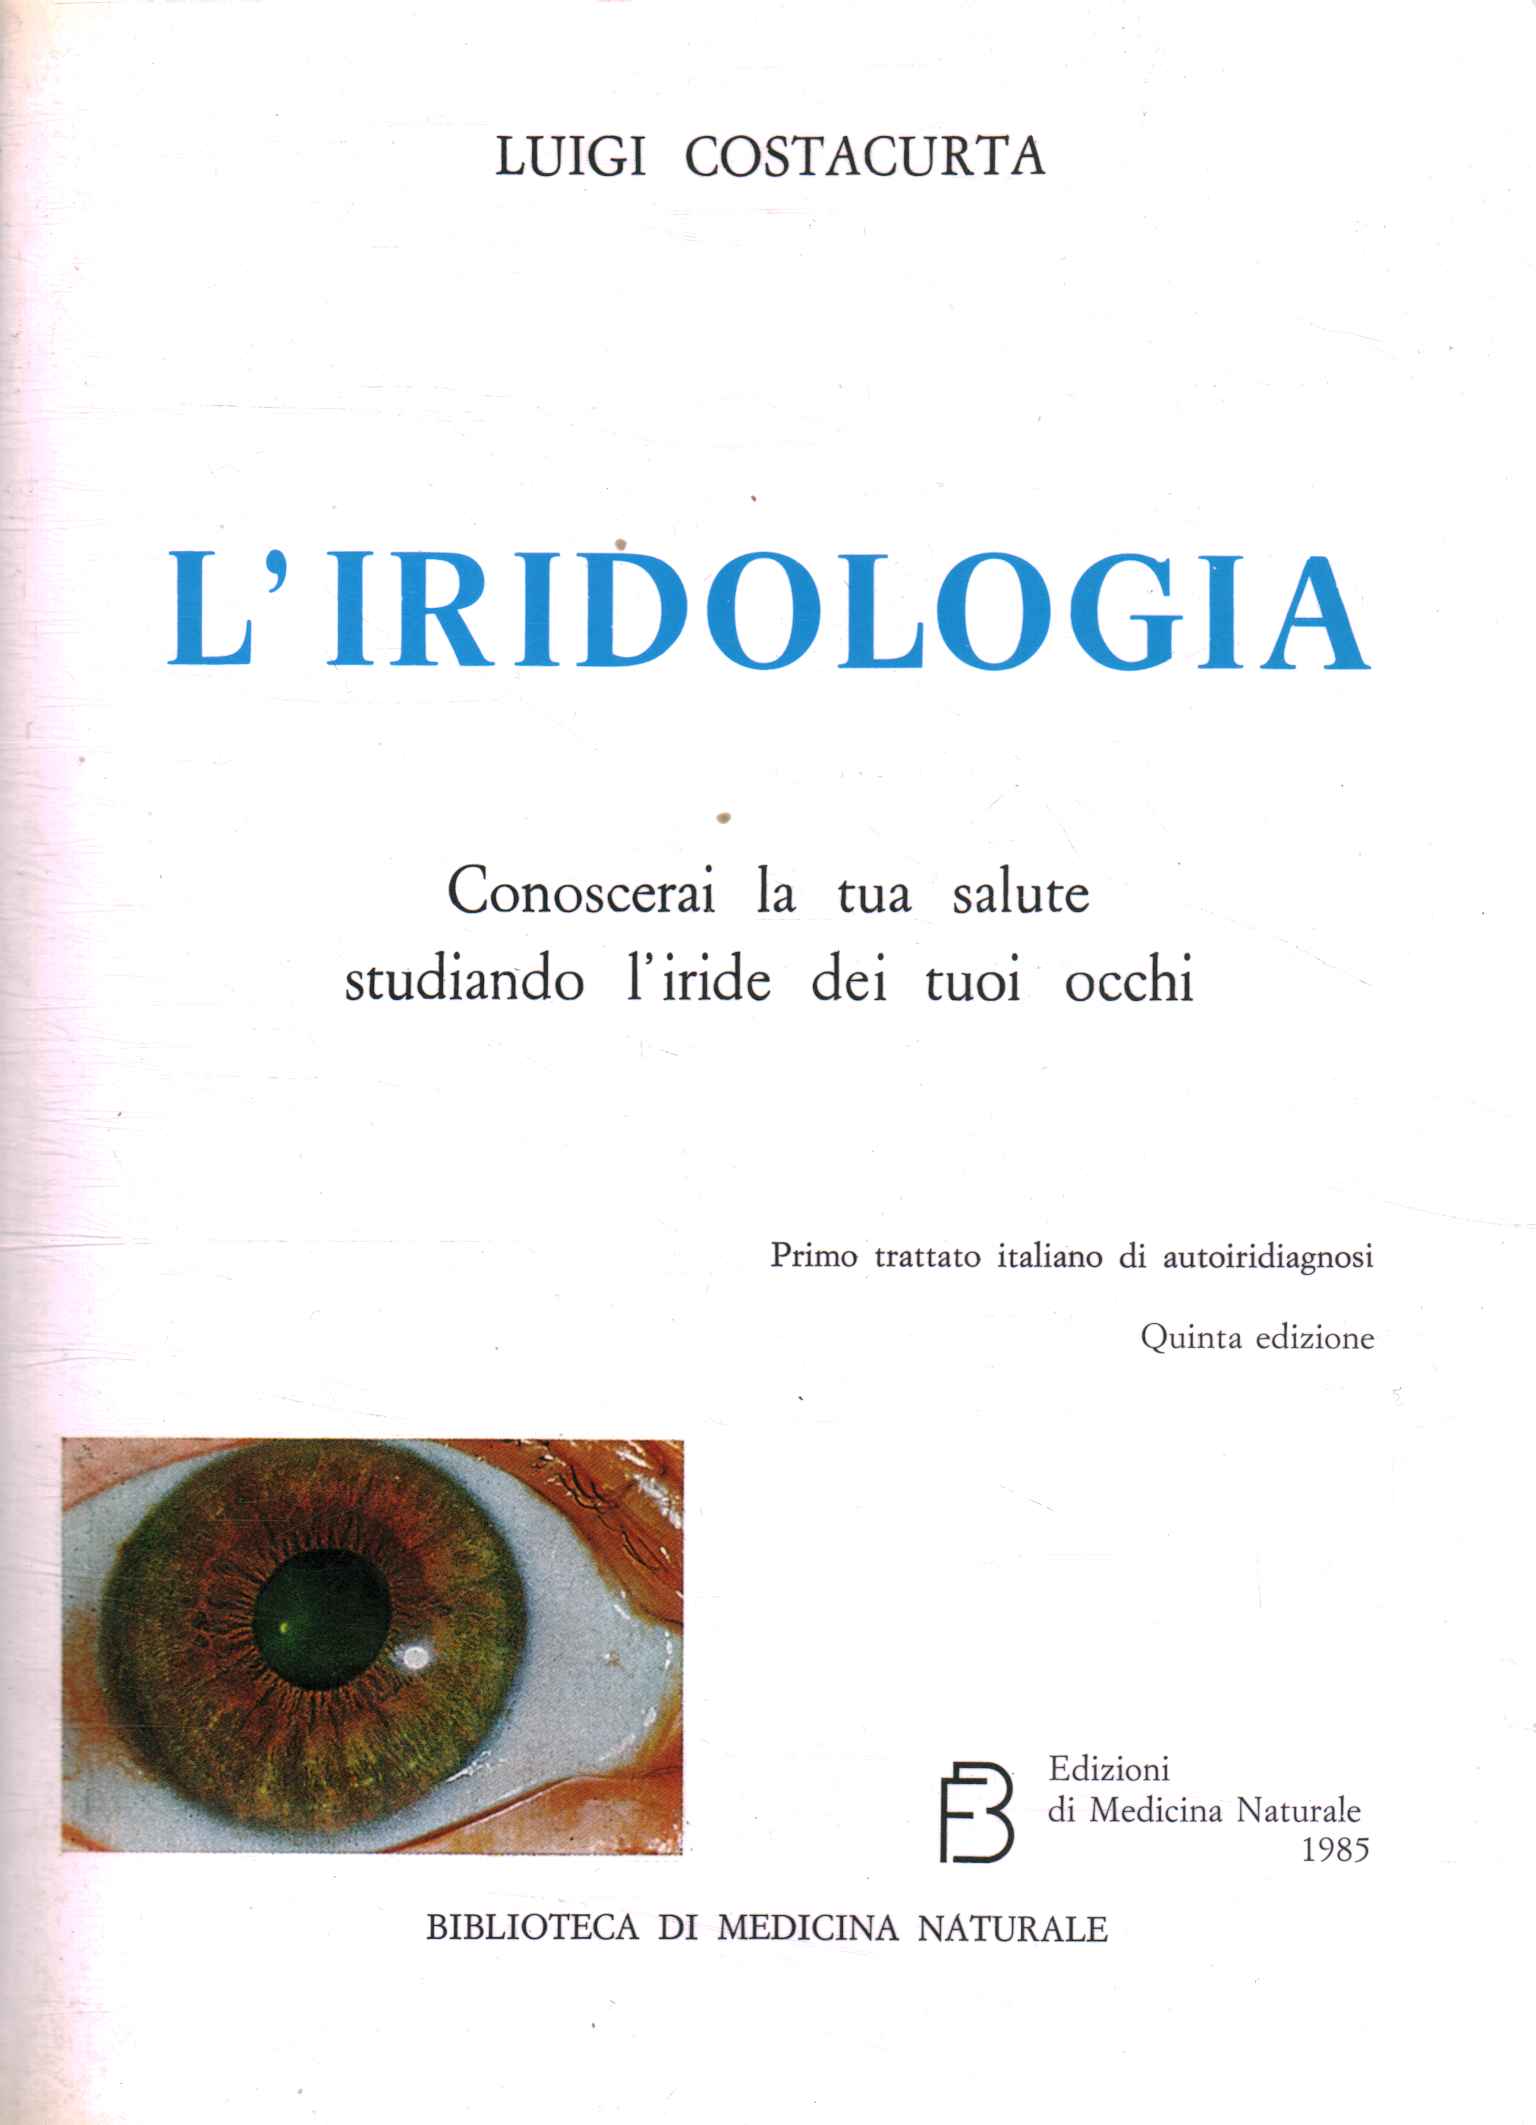 iridología